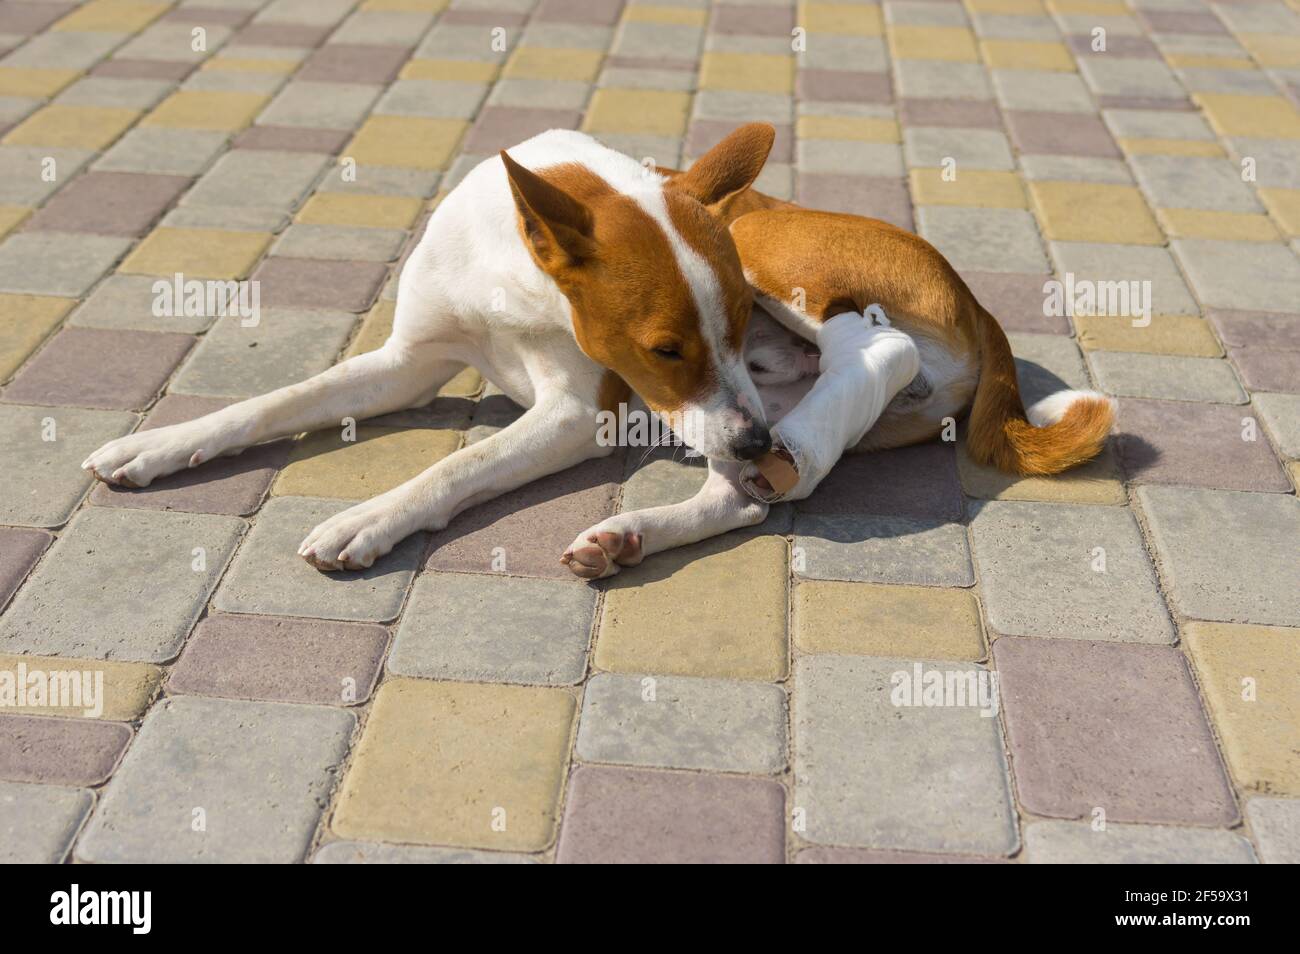 Carino cane basenji con piedi hind brindati su cui giace un marciapiede e cercando di togliere questa strana bendatura dopo l'intervento chirurgico Foto Stock